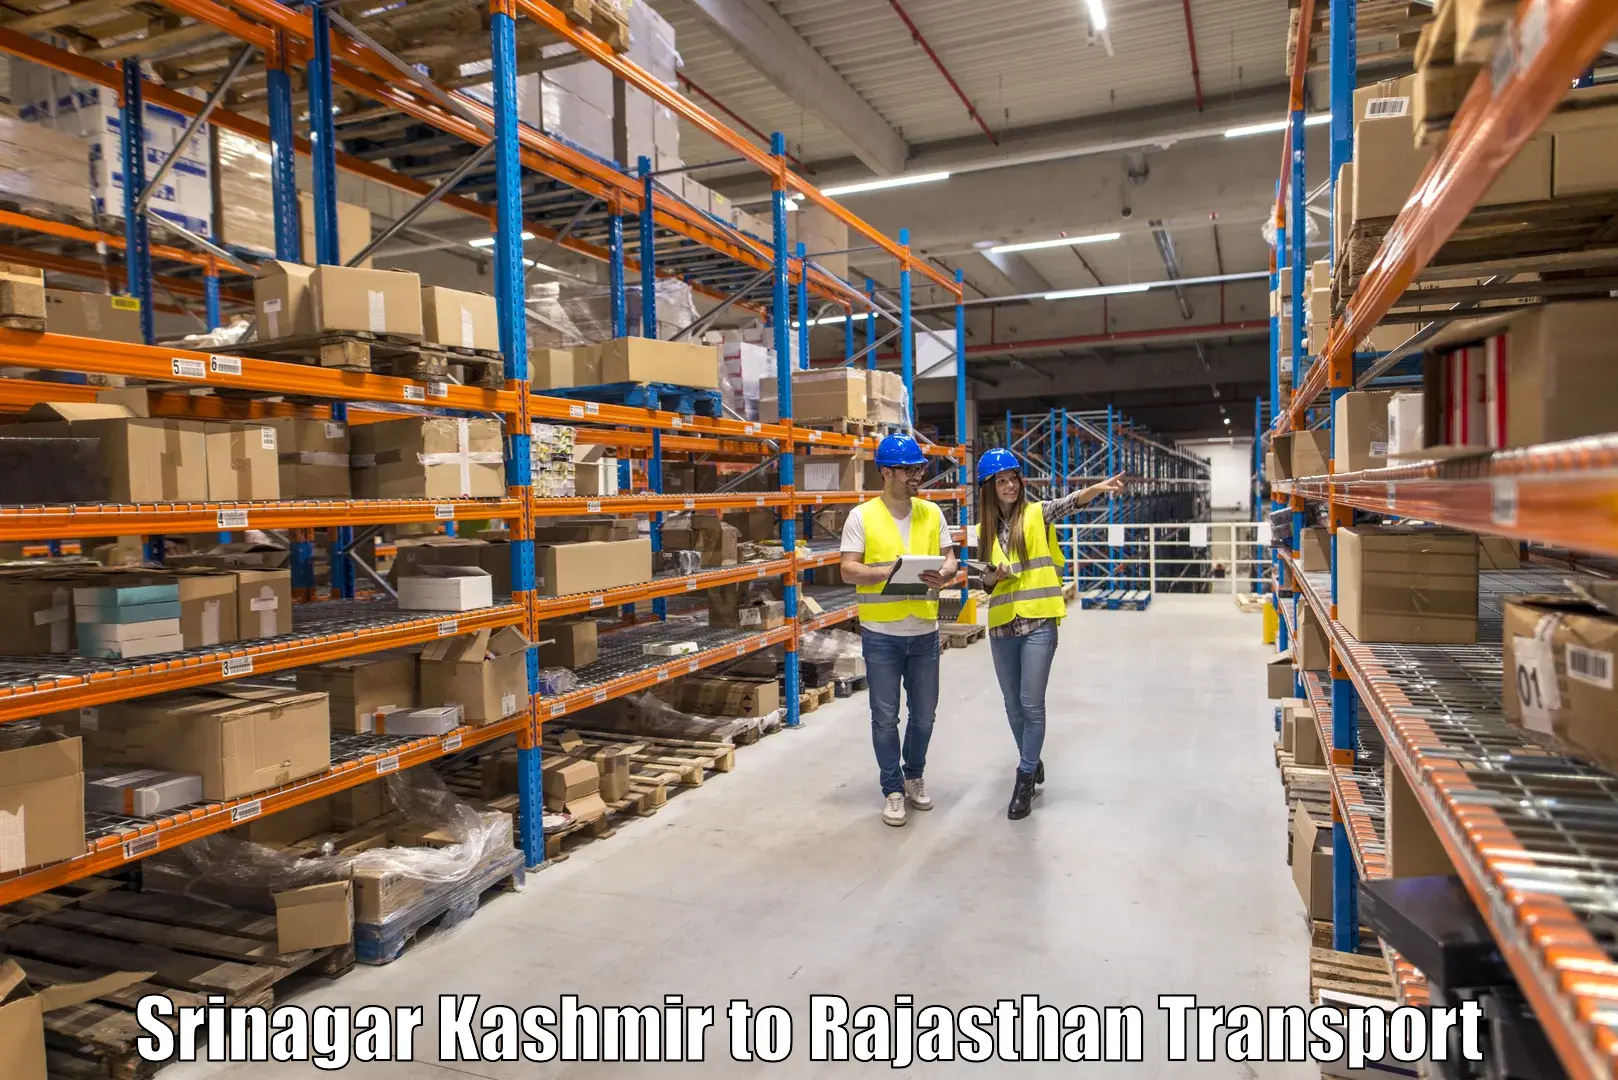 Online transport Srinagar Kashmir to Mandalgarh